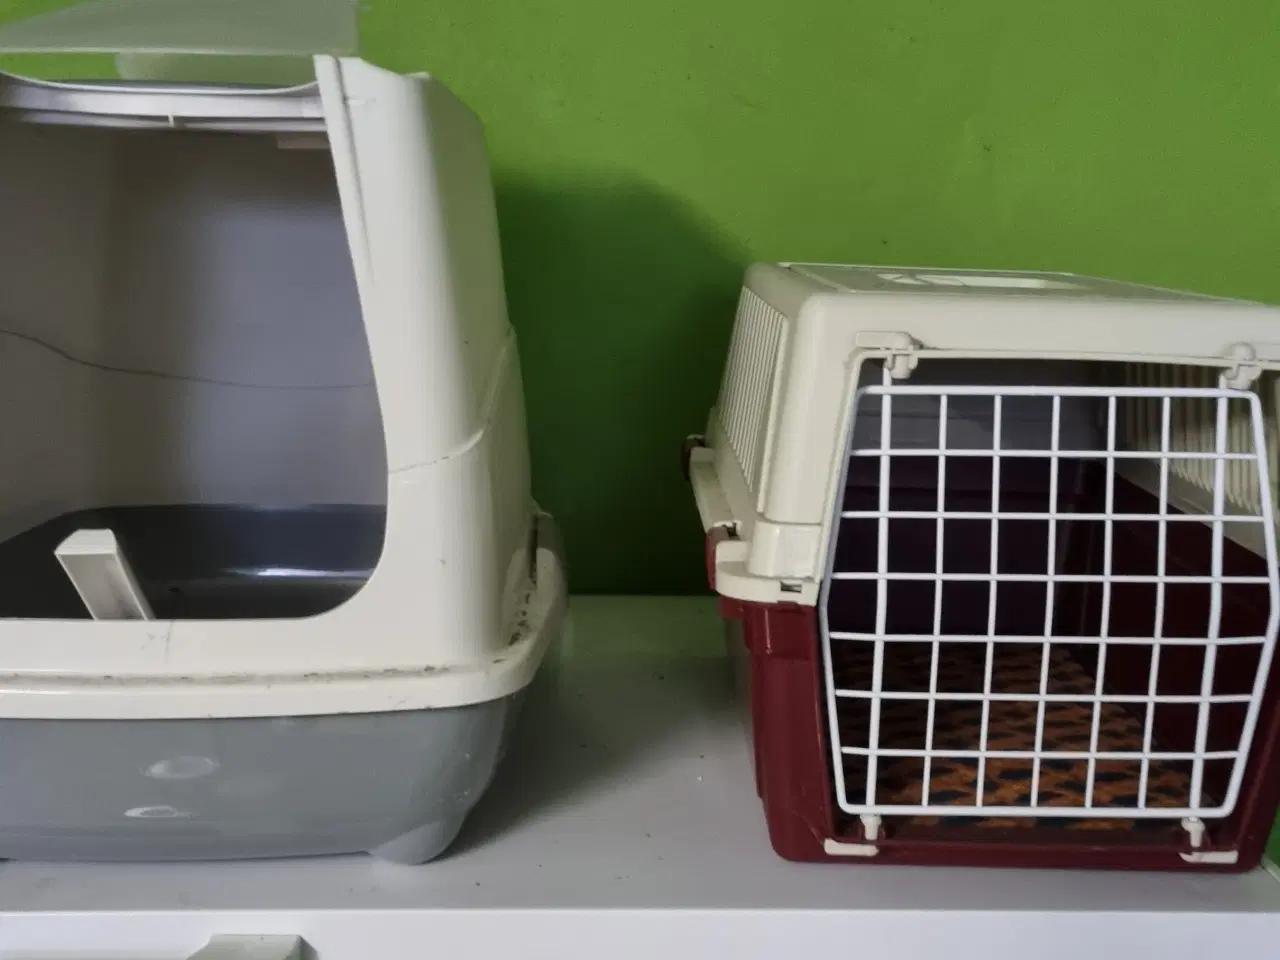 Billede 1 - 1 katte transport kasse og 1 kattebakke